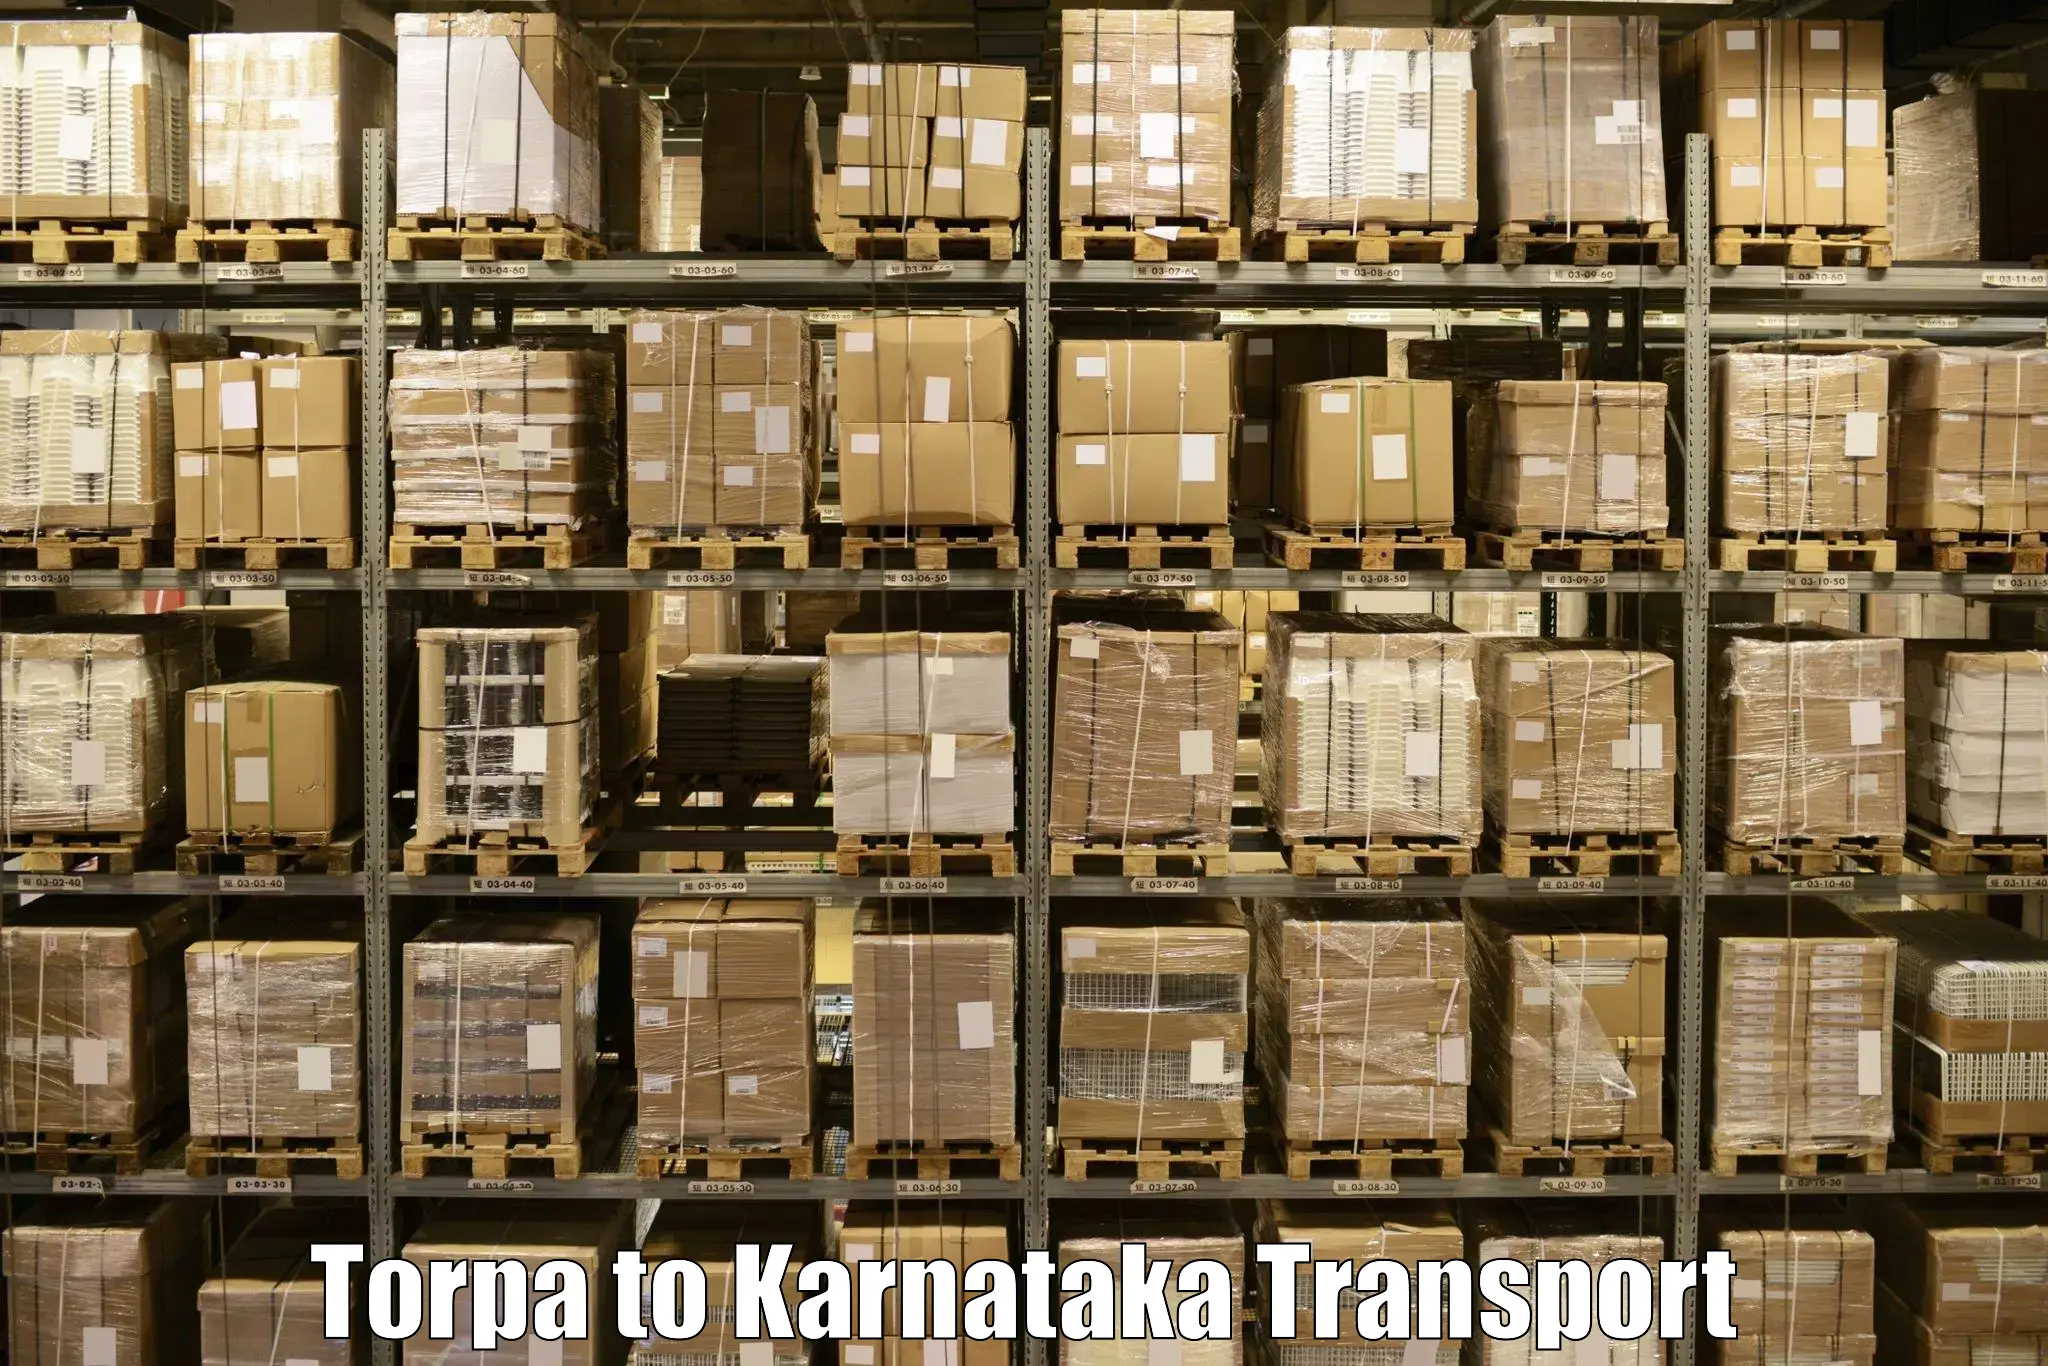 Bike transfer in Torpa to Karnataka